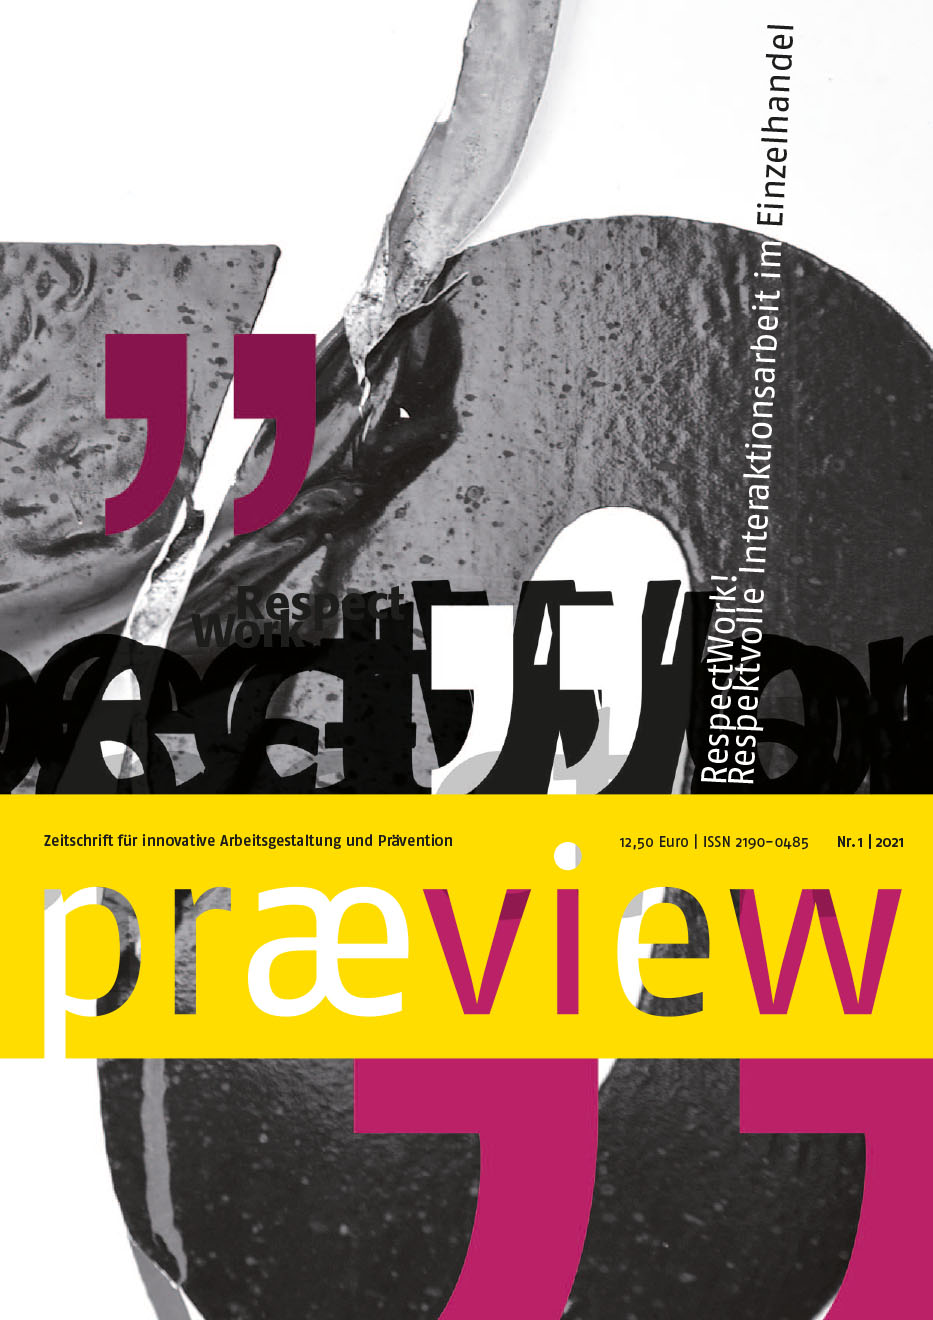 Das Magazincover der præview 01/2021– Zeitschrift für innovative Arbeitsgestaltung und Prävention